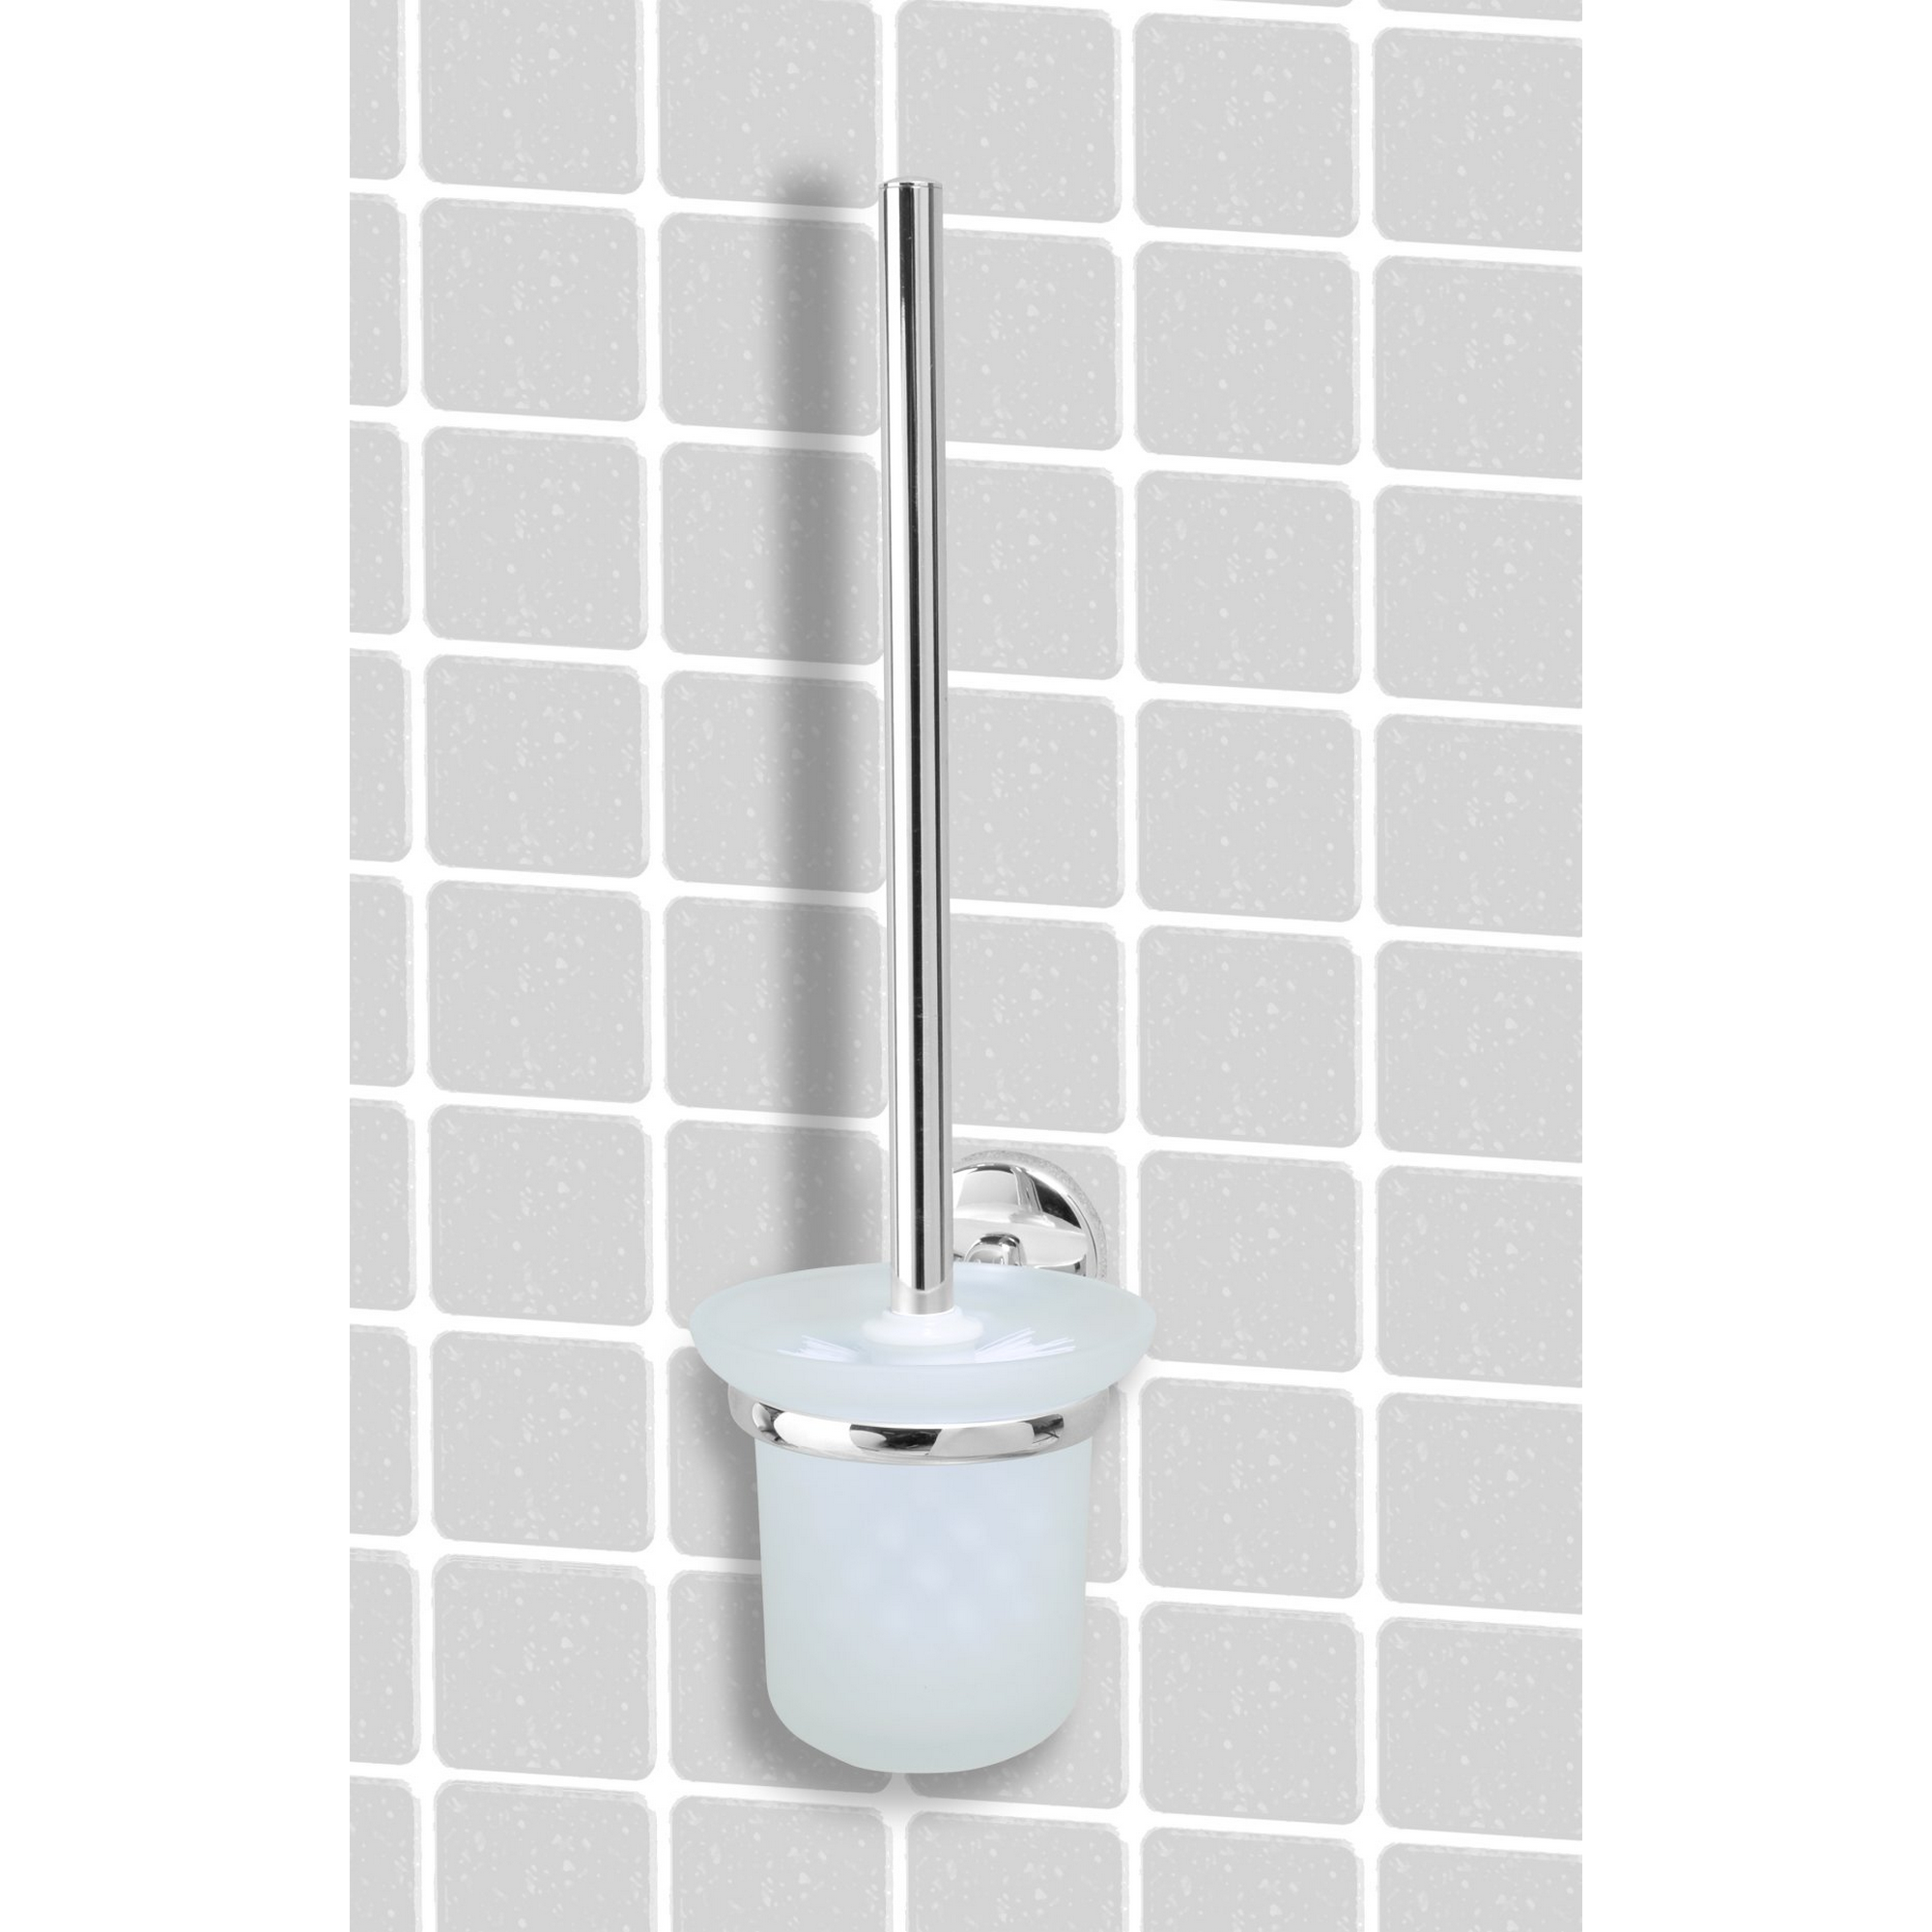 WC-Bürstengarnitur 'Vision' wandhängend rund verchromt/weiß + product picture